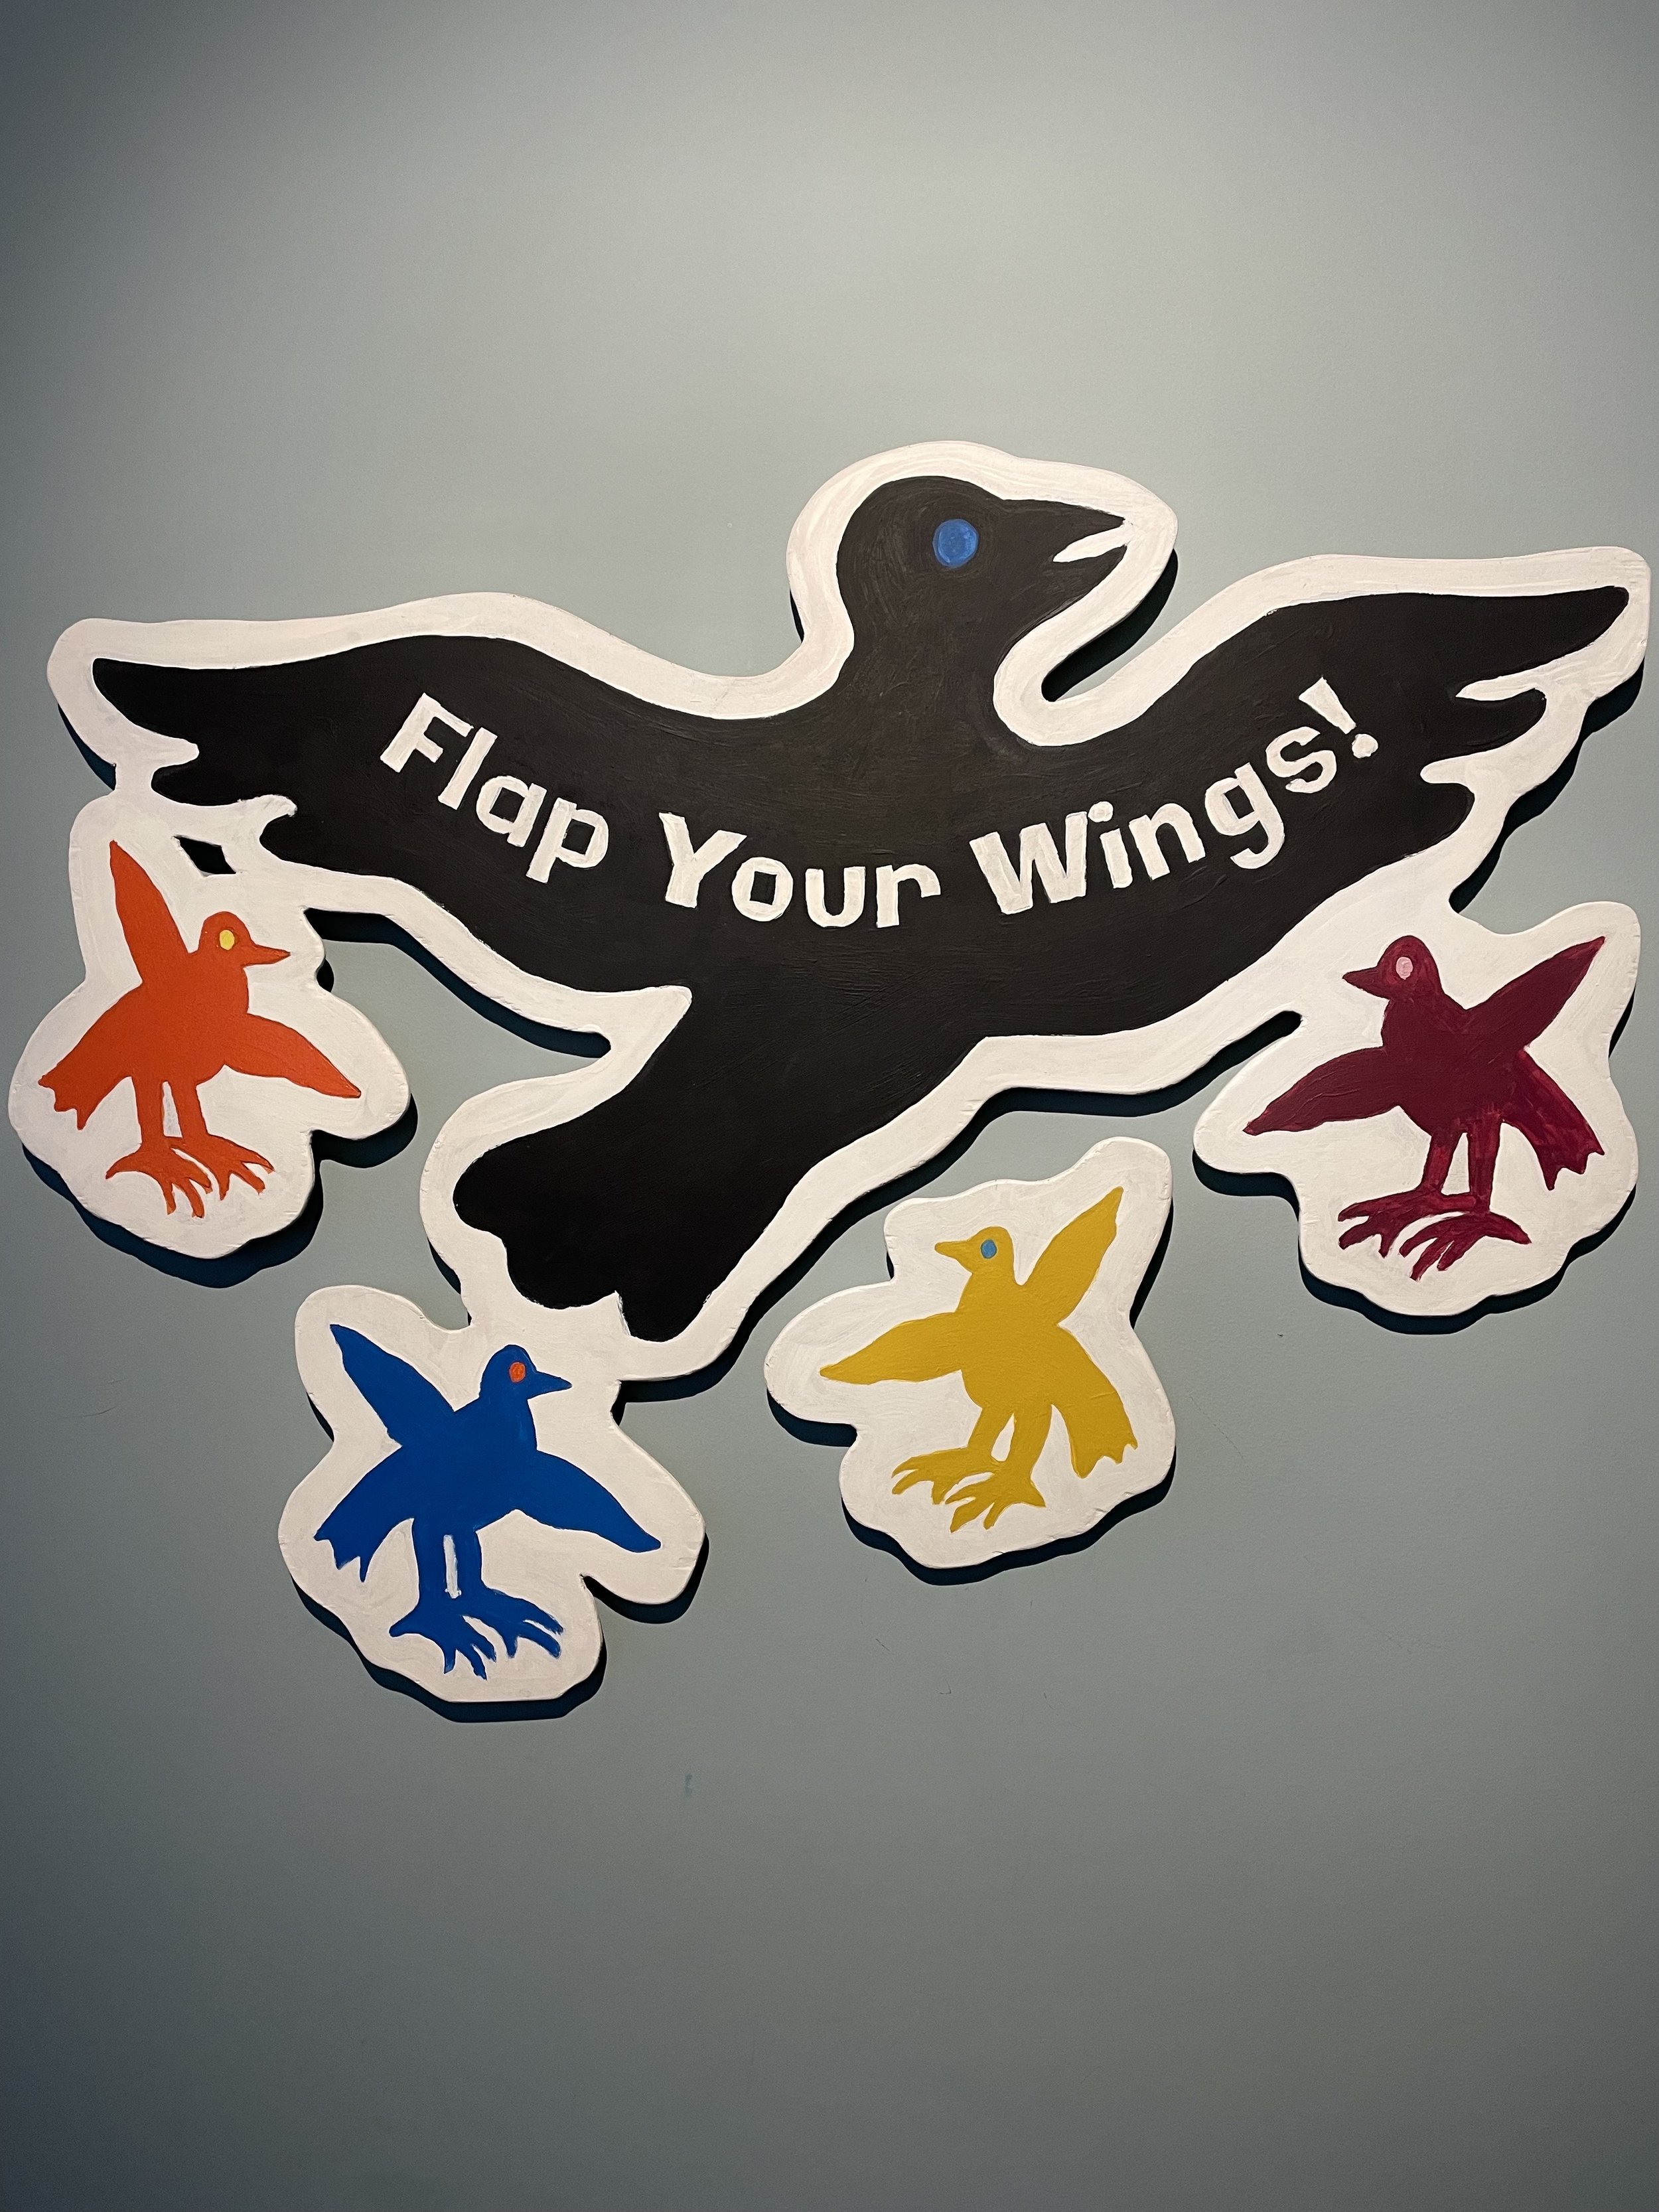 Flap Your Wings.jpg